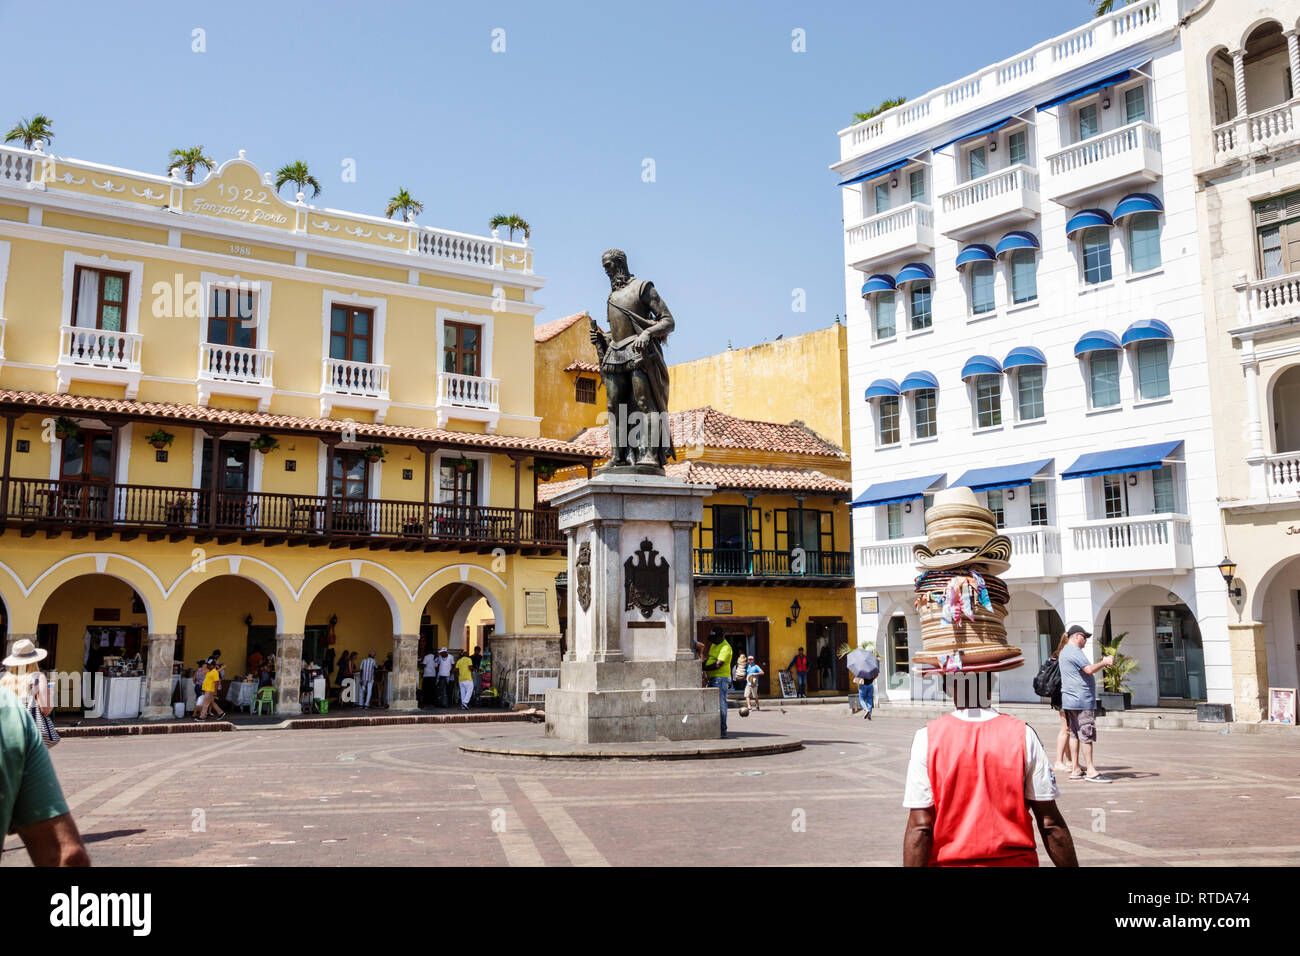 Cartagena Colombie,résidents hispaniques,Plaza de los Coches,place publique,statue sculpture,fondateur de la ville,Don Pedro de Heredia,conquérant espagnol Banque D'Images